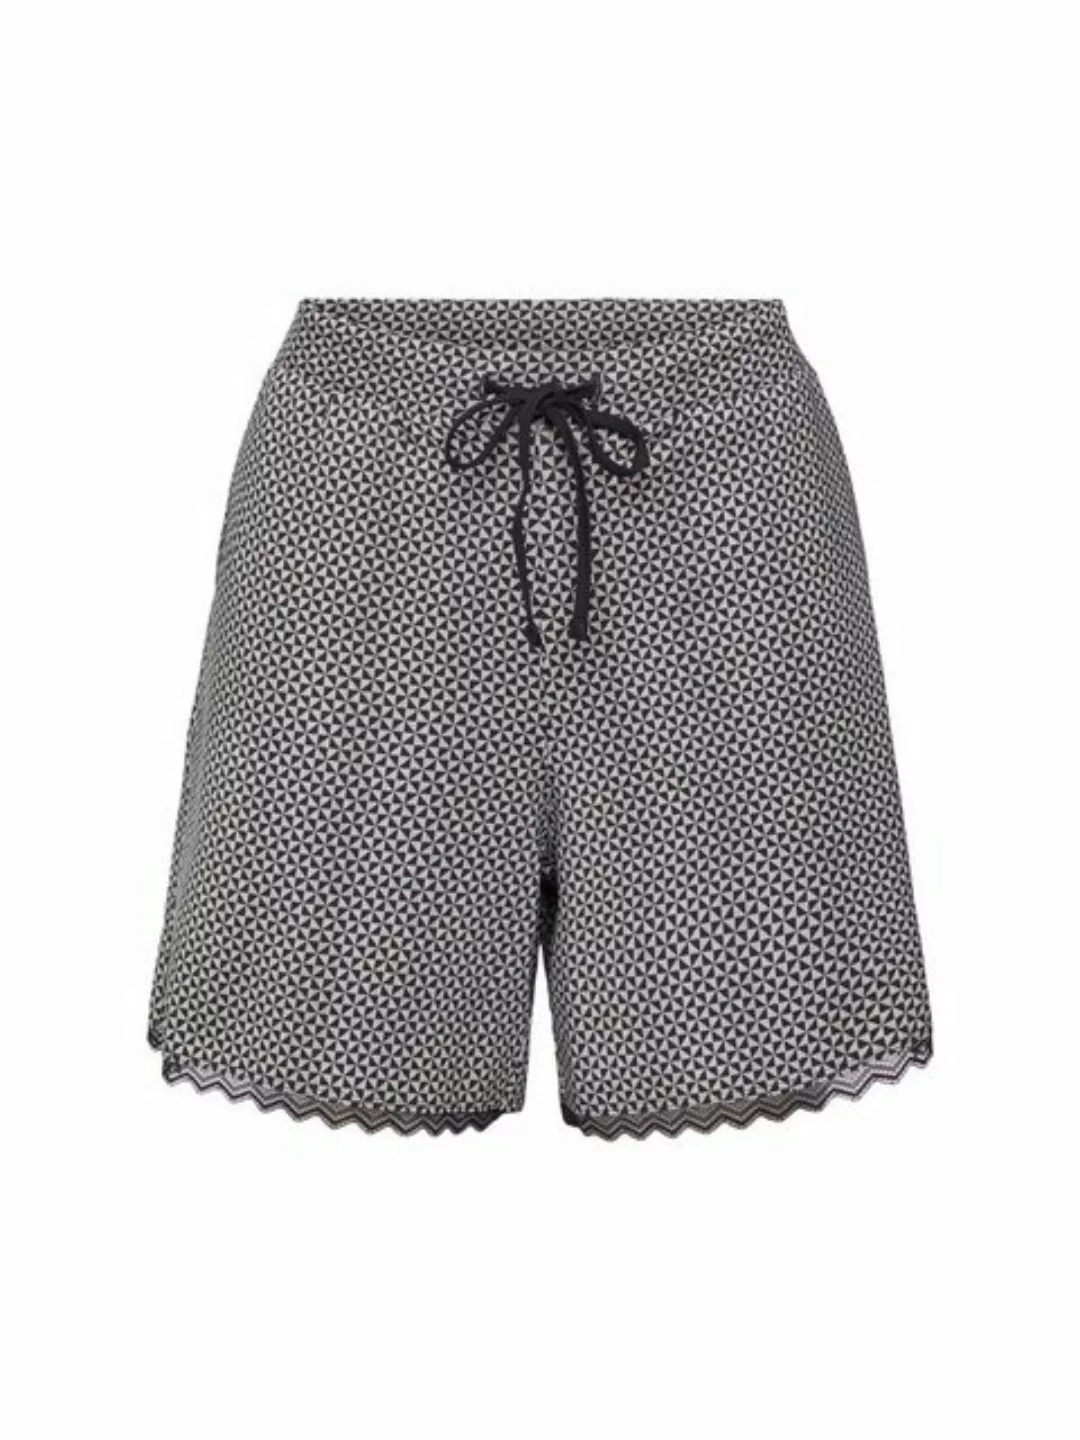 Esprit Schlafhose Jersey-Shorts mit Print günstig online kaufen